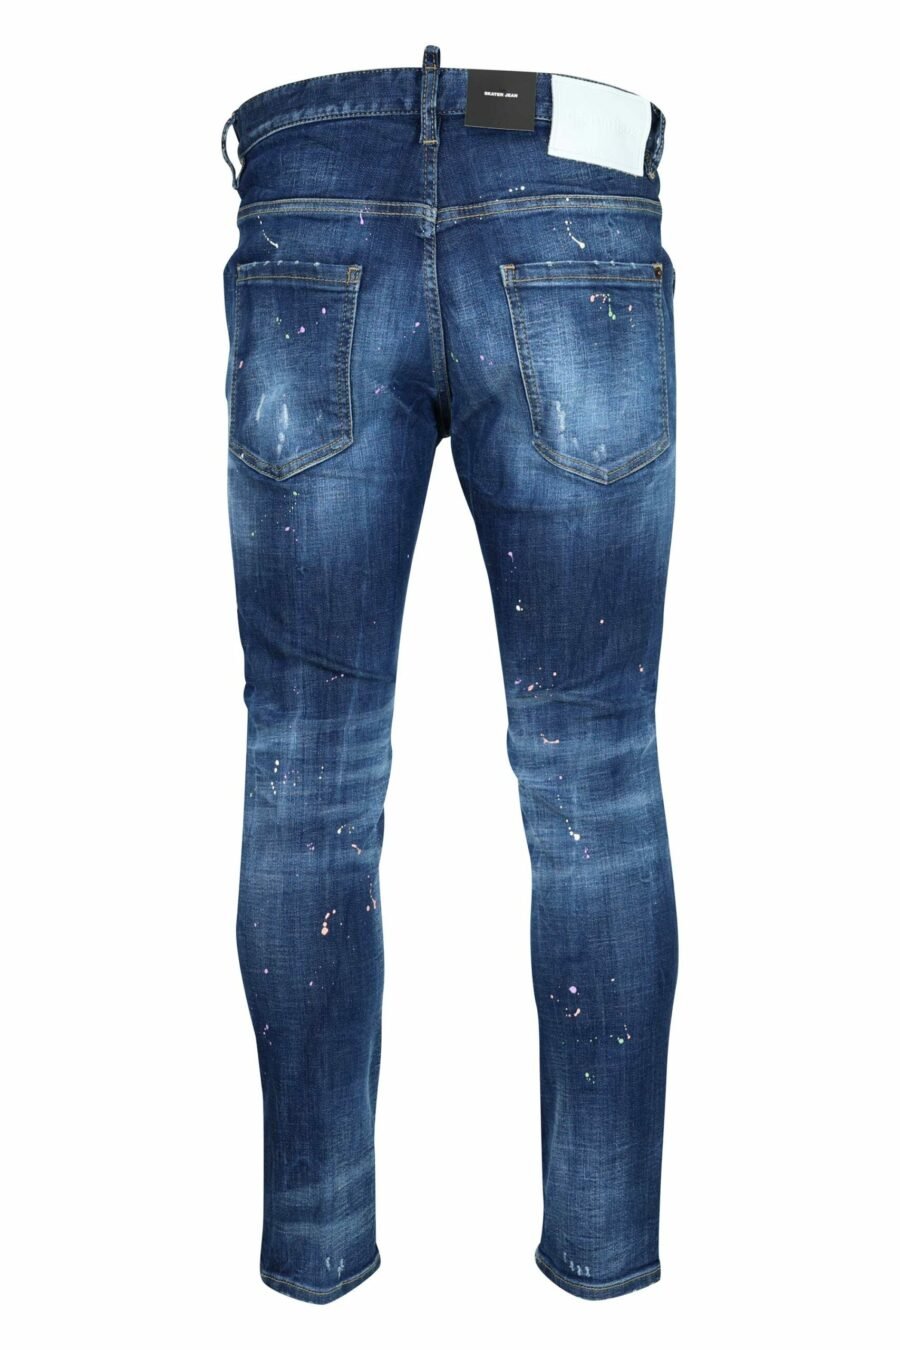 Calças de ganga "skater jean" azuis escuras com tinta branca - 8054148527457 2 scaled